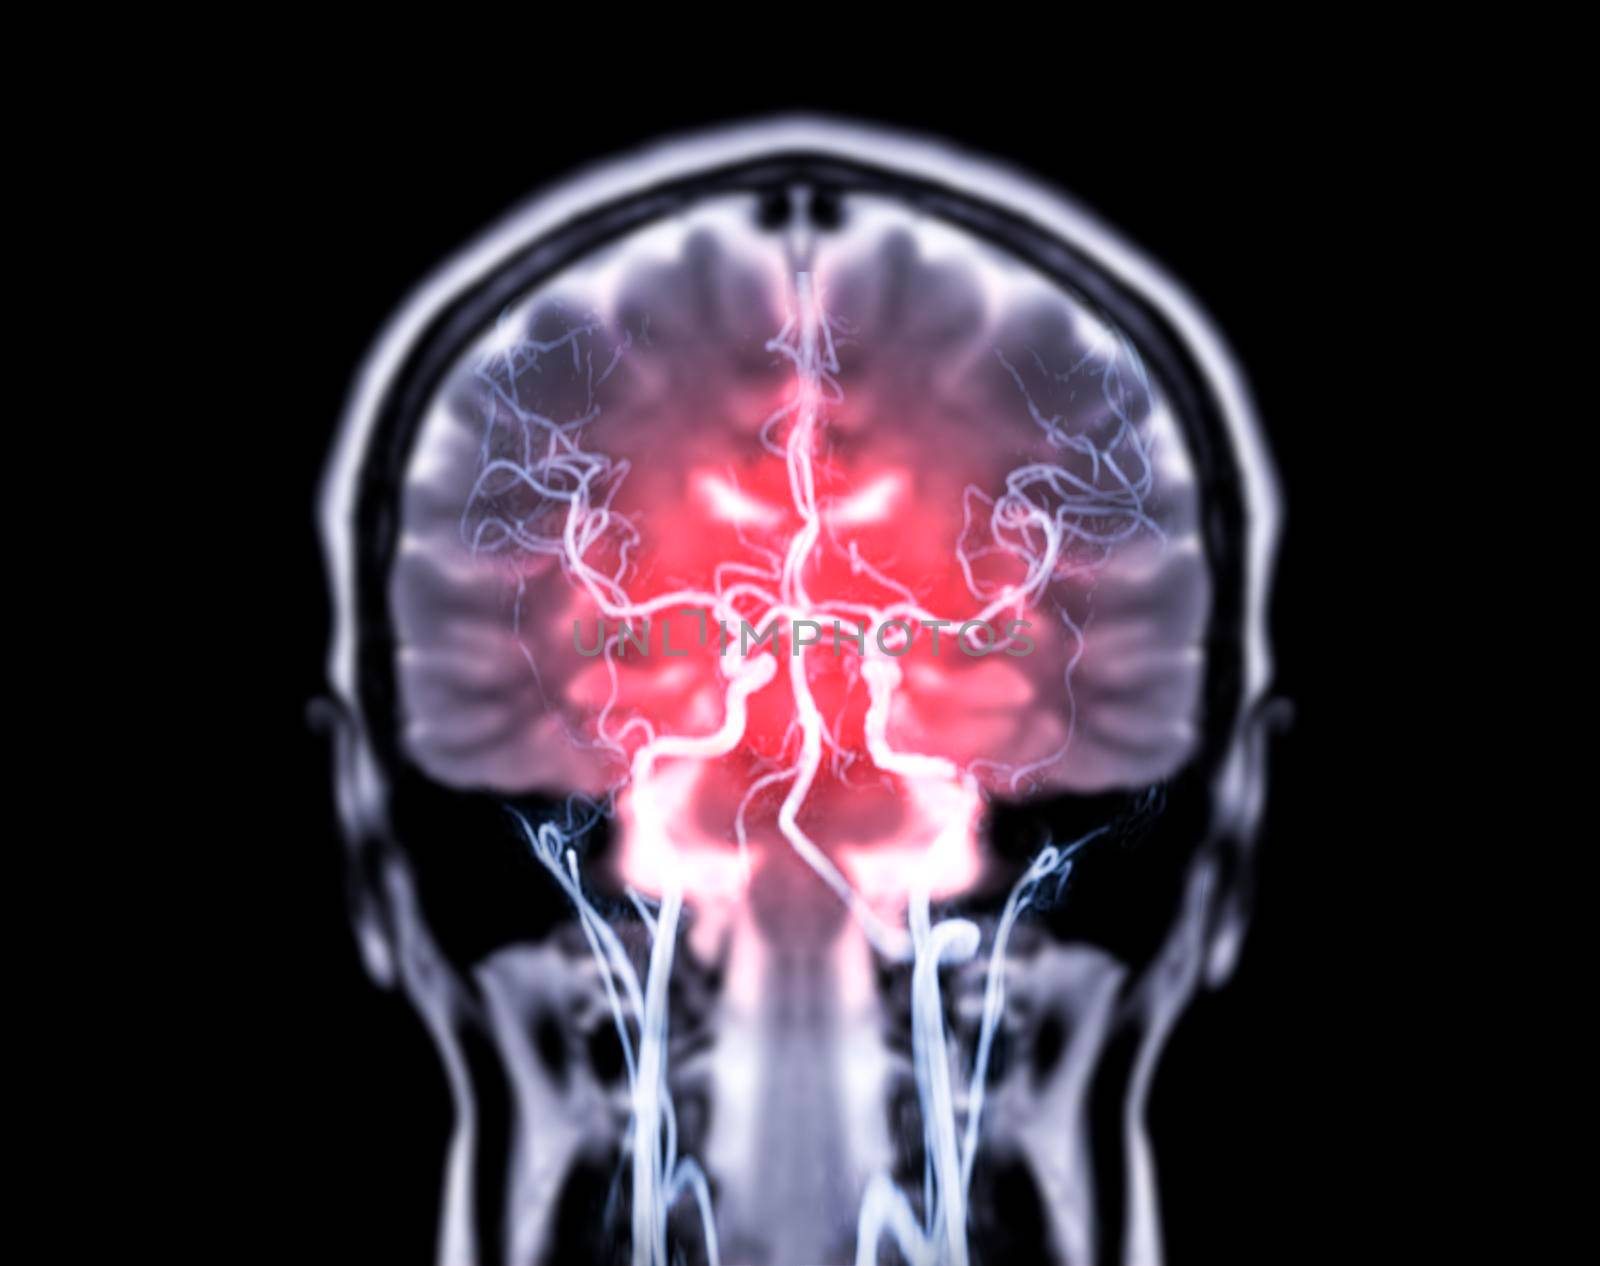 MRI brain Coronal T2W and MRA Brain fusion in Coronal view.